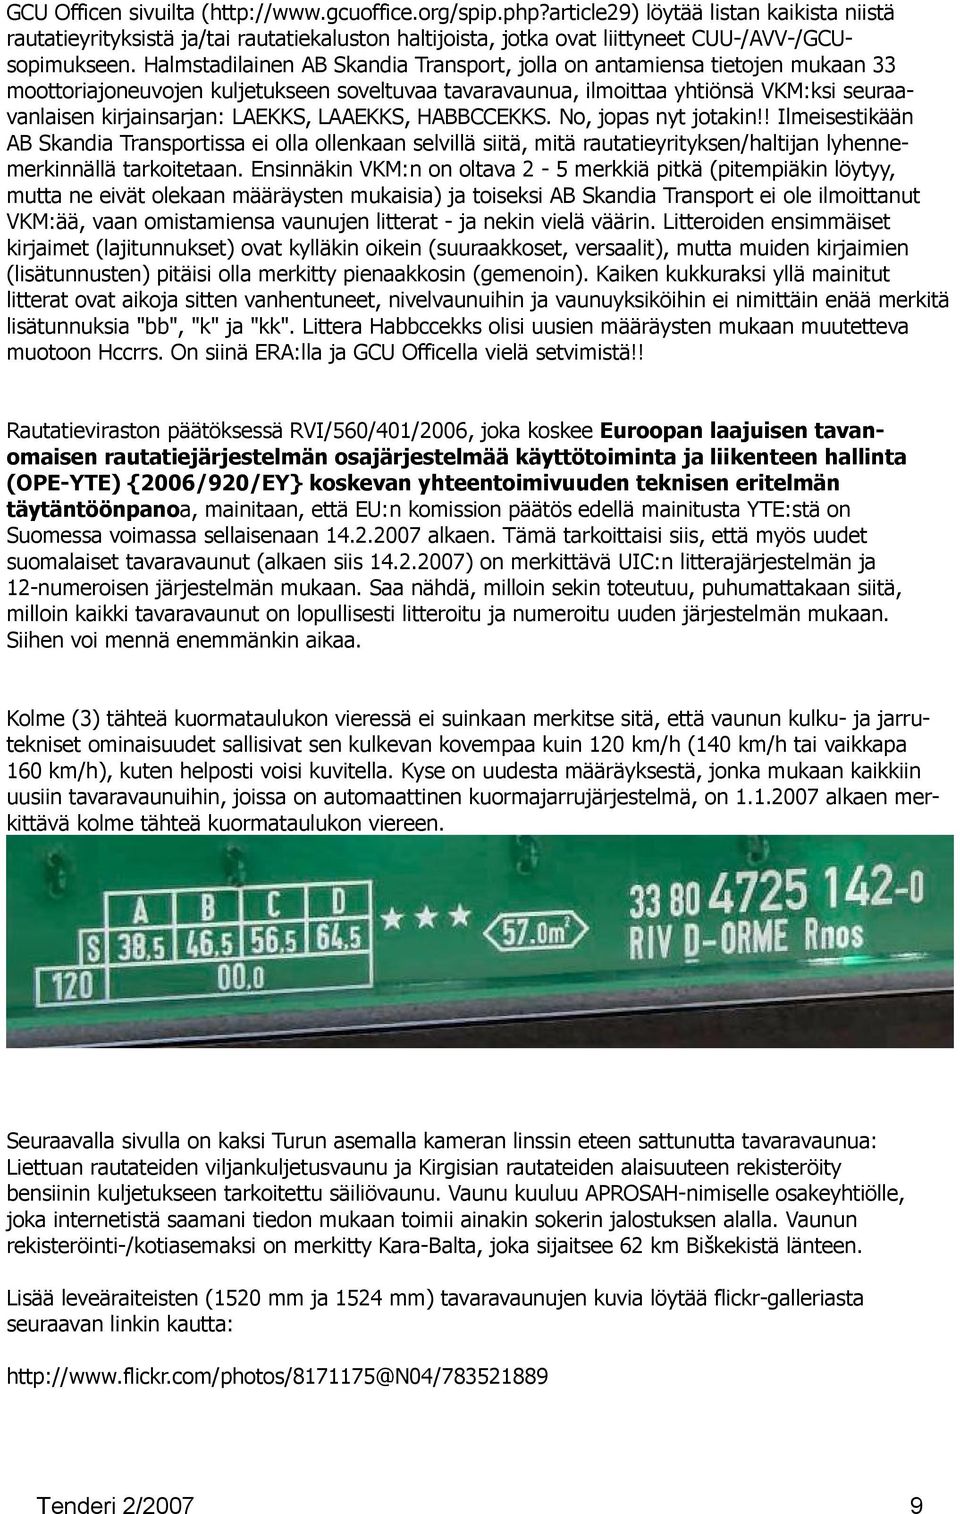 Halmstadilainen AB Skandia Transport, jolla on antamiensa tietojen mukaan 33 moottoriajoneuvojen kuljetukseen soveltuvaa tavaravaunua, ilmoittaa yhtiönsä VKM:ksi seuraavanlaisen kirjainsarjan: